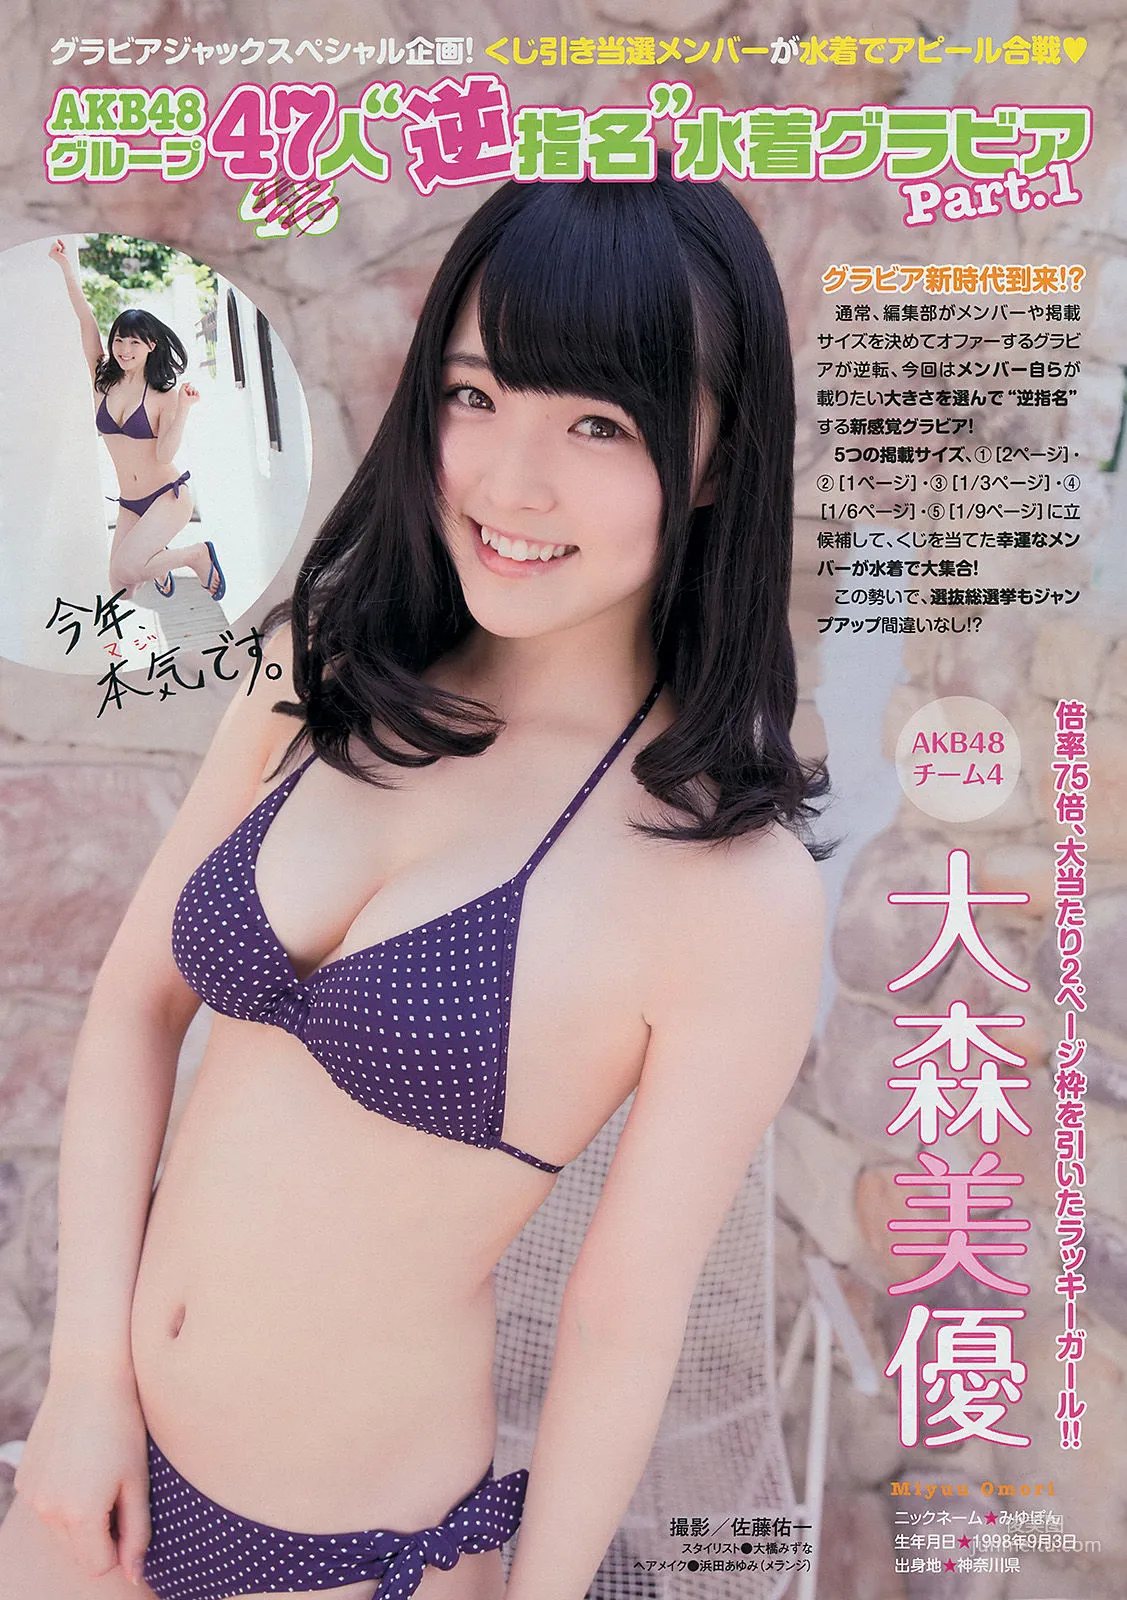 [Young Magazine] 渡辺麻友 川栄李奈 2401年No.27 写真杂志7